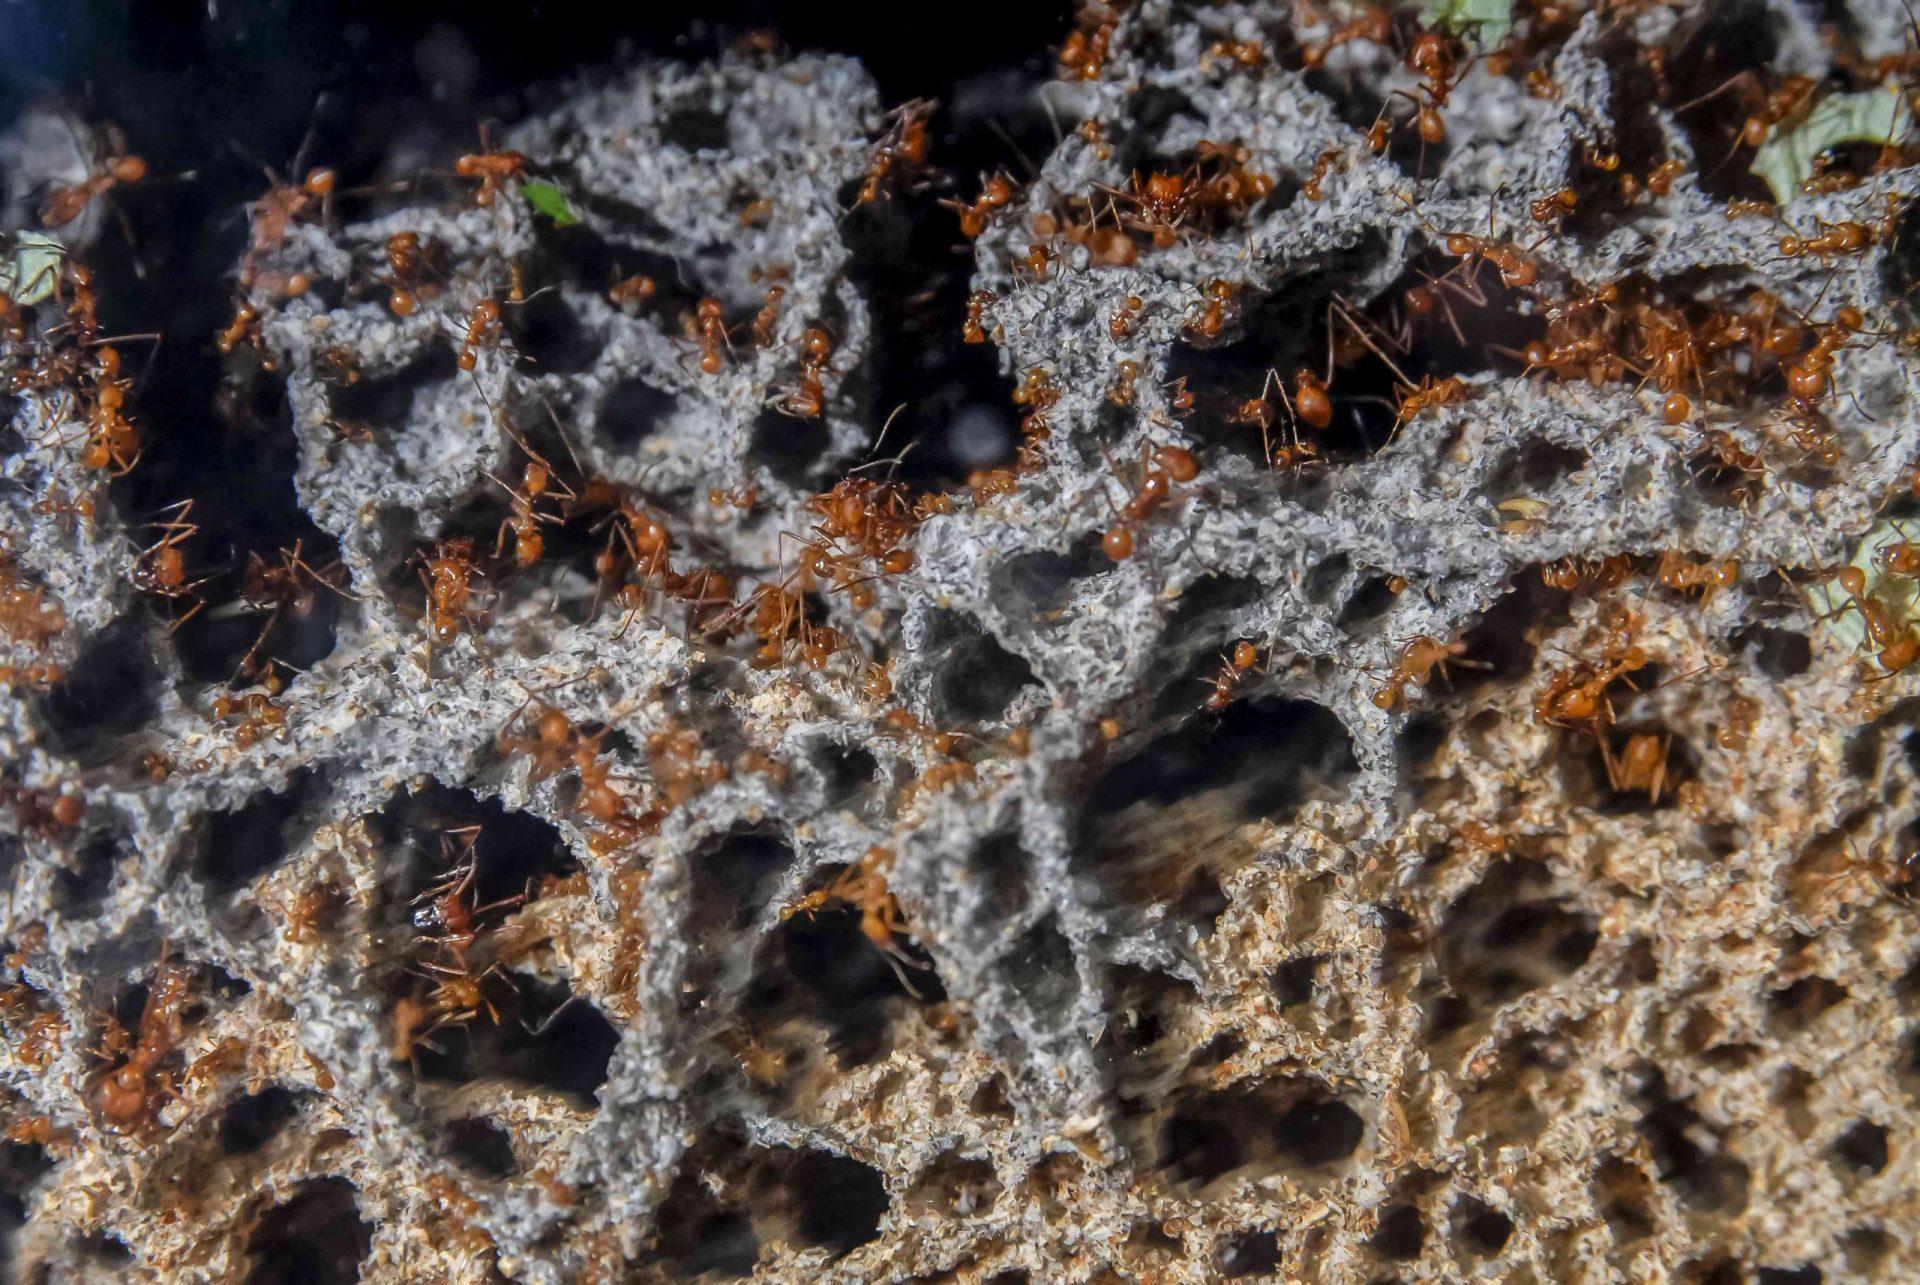 Hormigas cortadoras de hojas, Atta cephalotes, en su jardín de hongos, Los cultivos de hongos subterráneos de las hormigas cortadoras de hojas Atta pueden crecer hasta el diámetro de la cabeza de un hombre